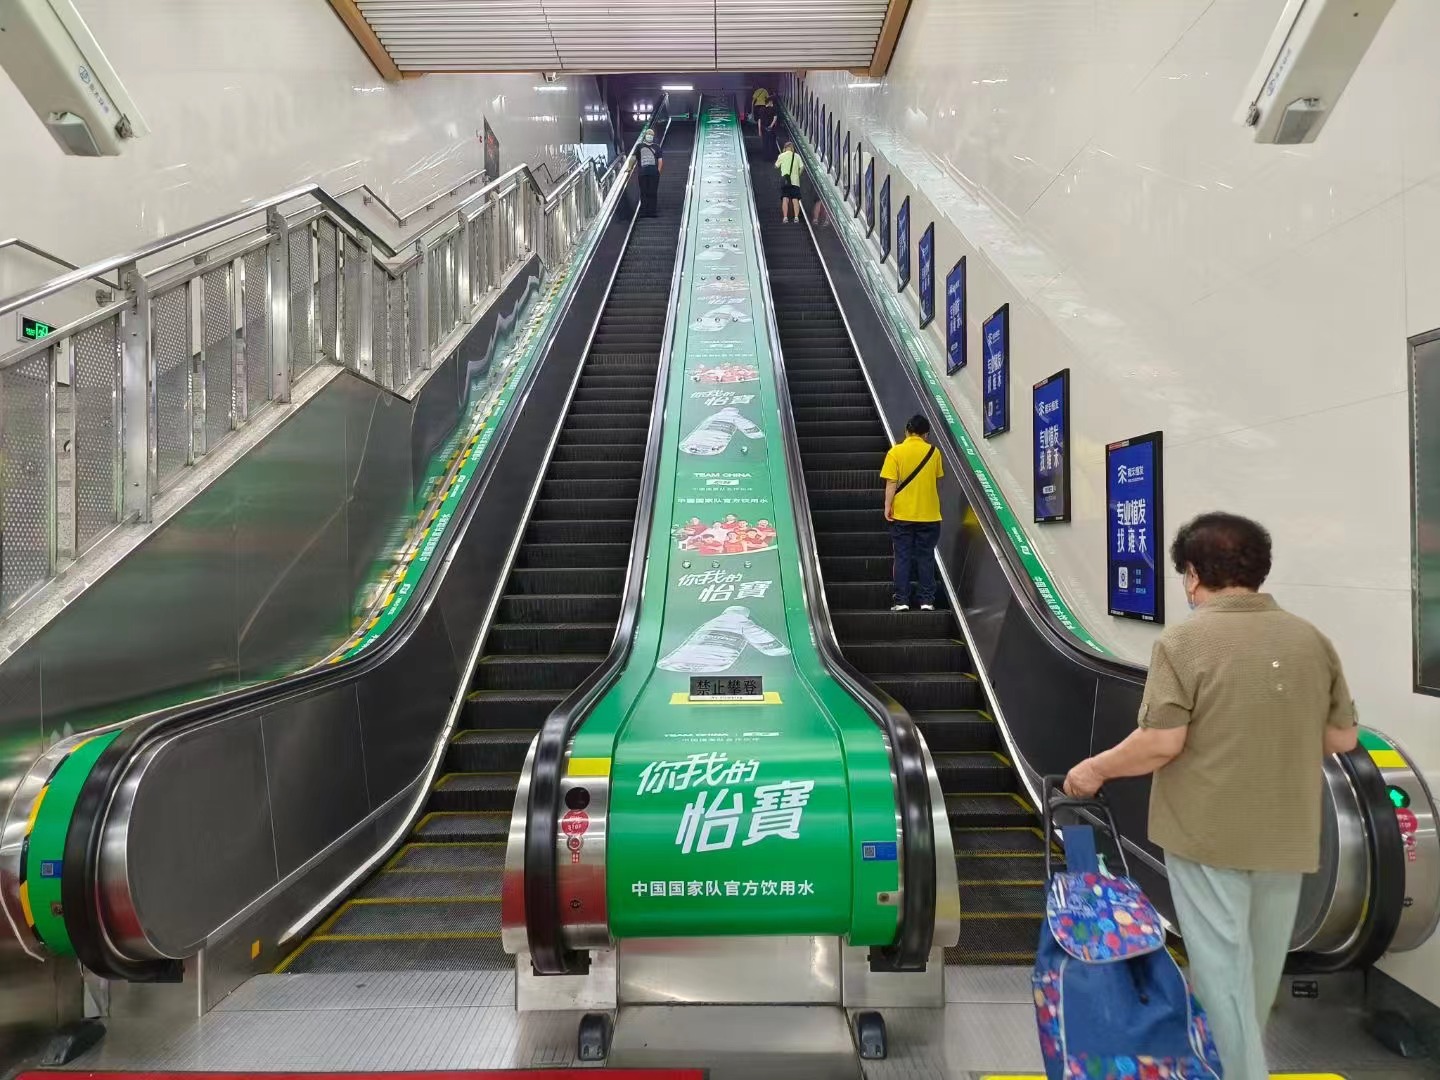 地铁扶梯面板广告